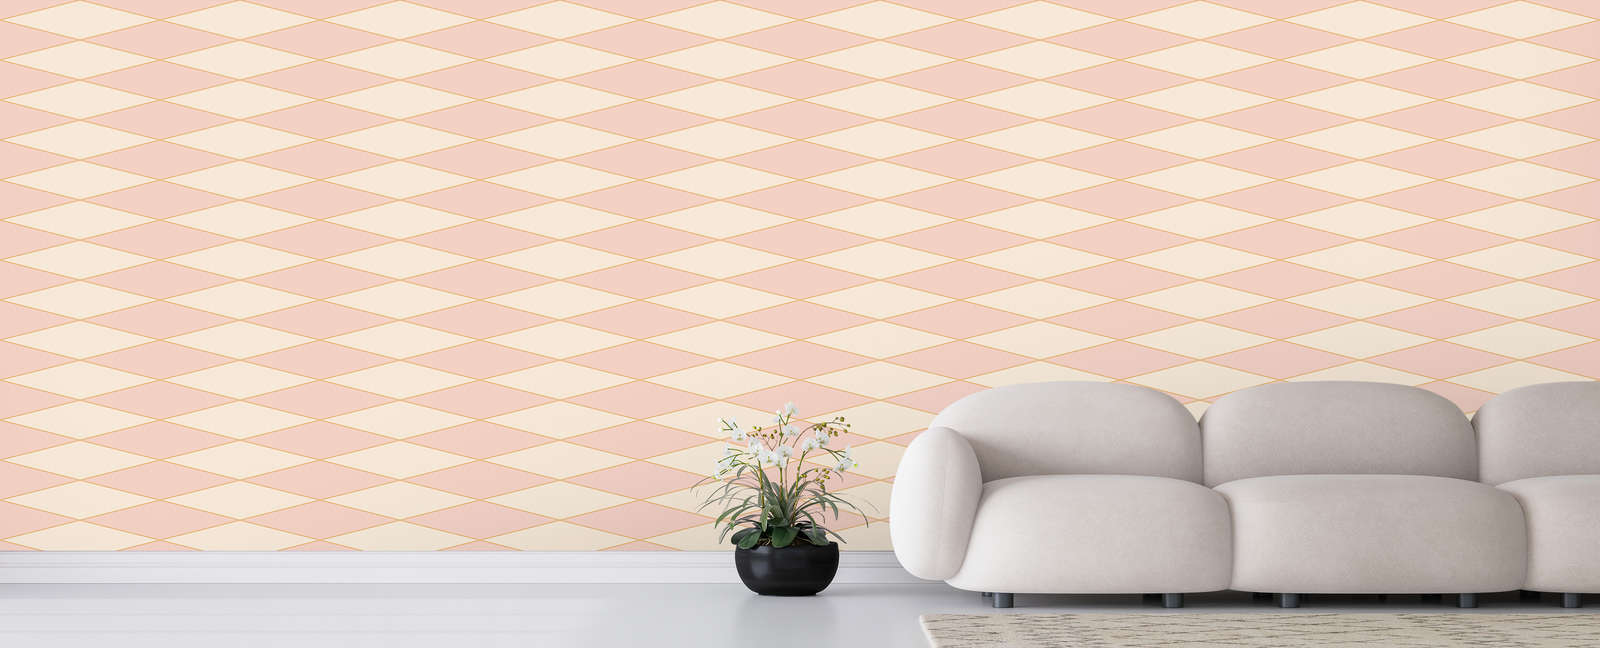             Papier peint panoramique losange style rétro des années 70 - rose, crème, orange | Intissé lisse mat
        